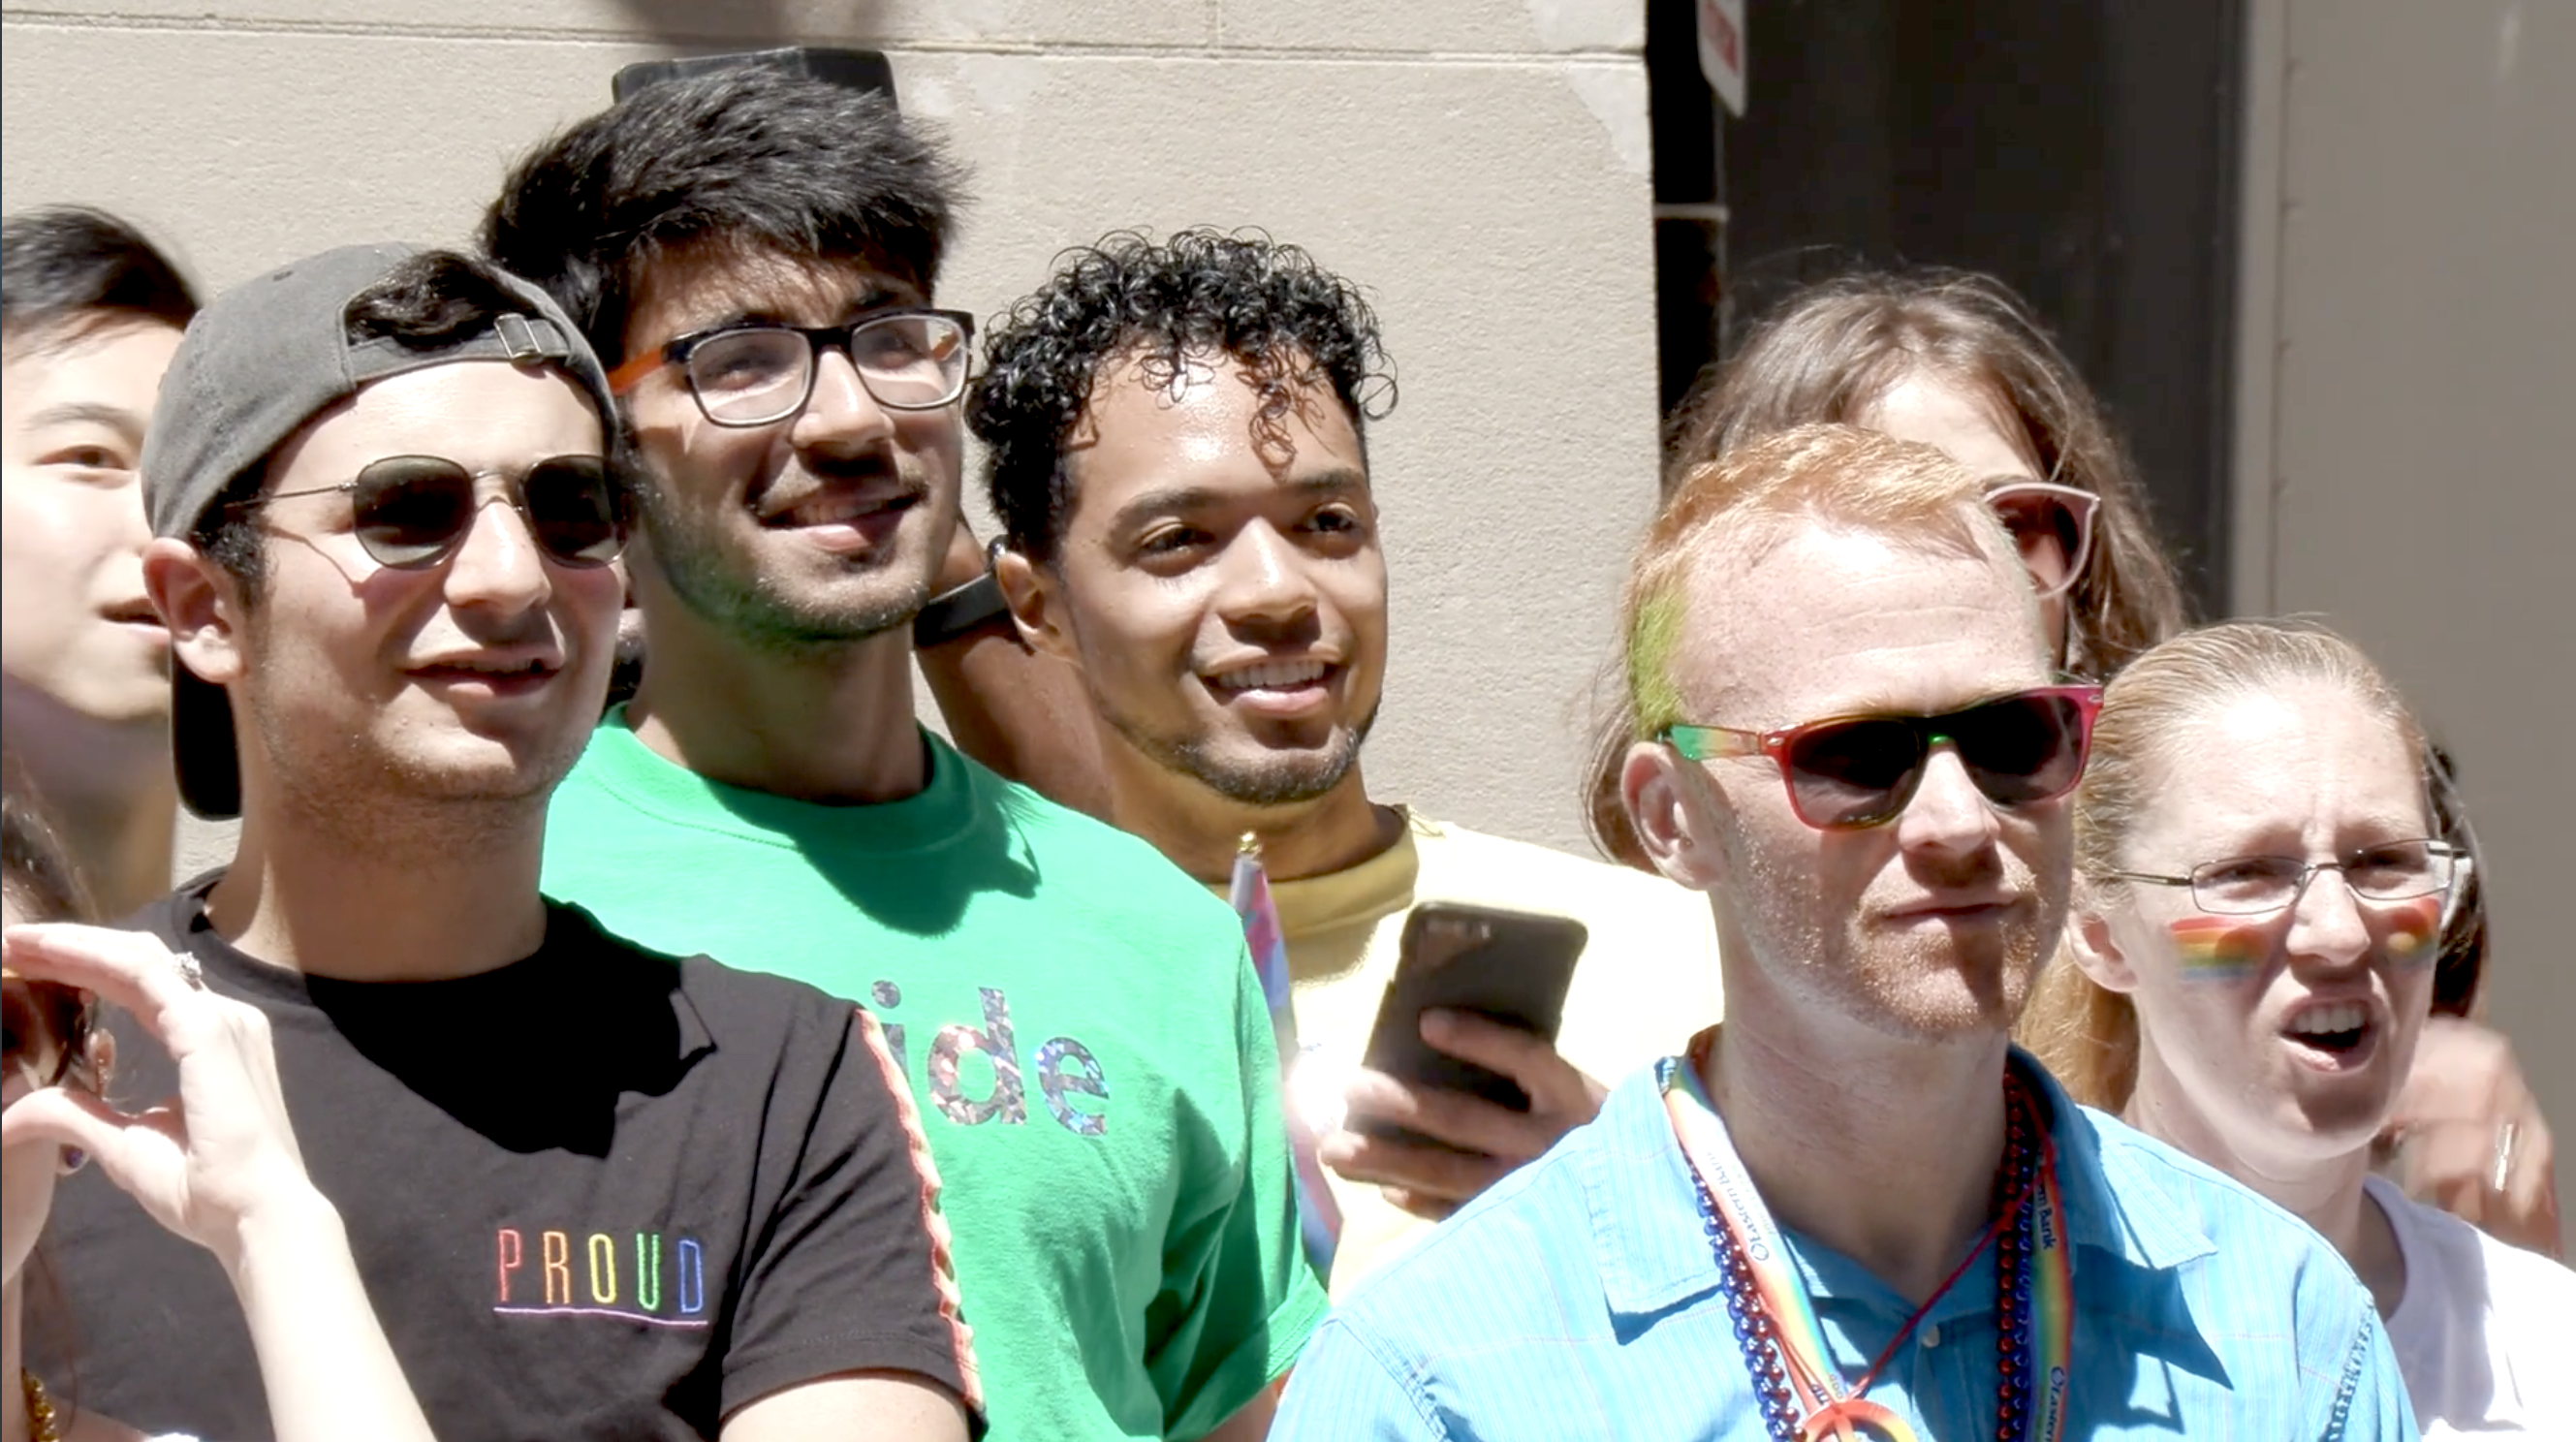 Microsoft's local GLEAM chapter celebrates Pride in Boston. 